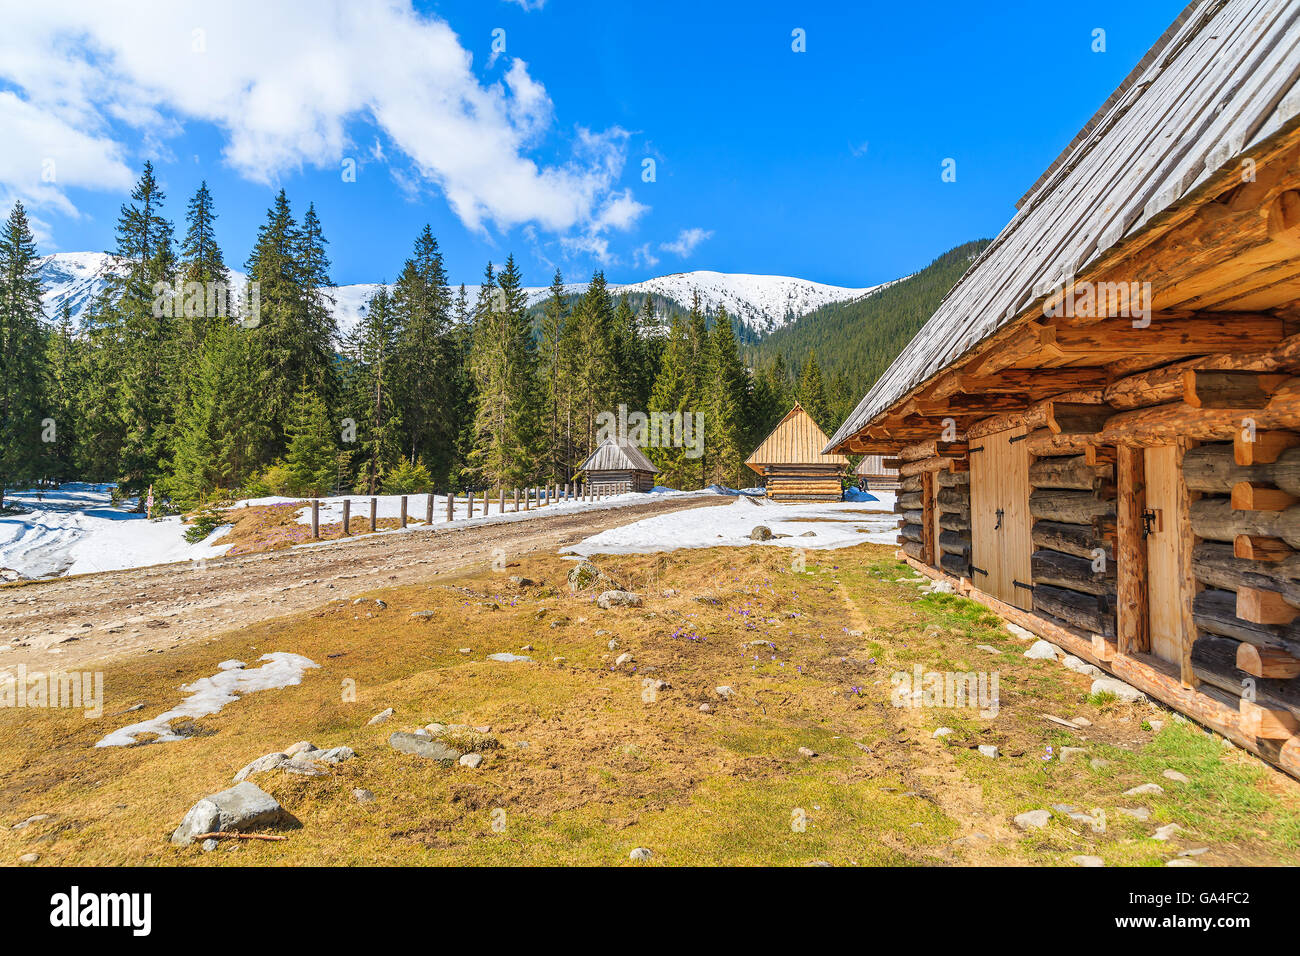 Cabaña de madera a lo largo de la carretera de Valle Chocholowska en primavera, las Montañas Tatra, Polonia Foto de stock